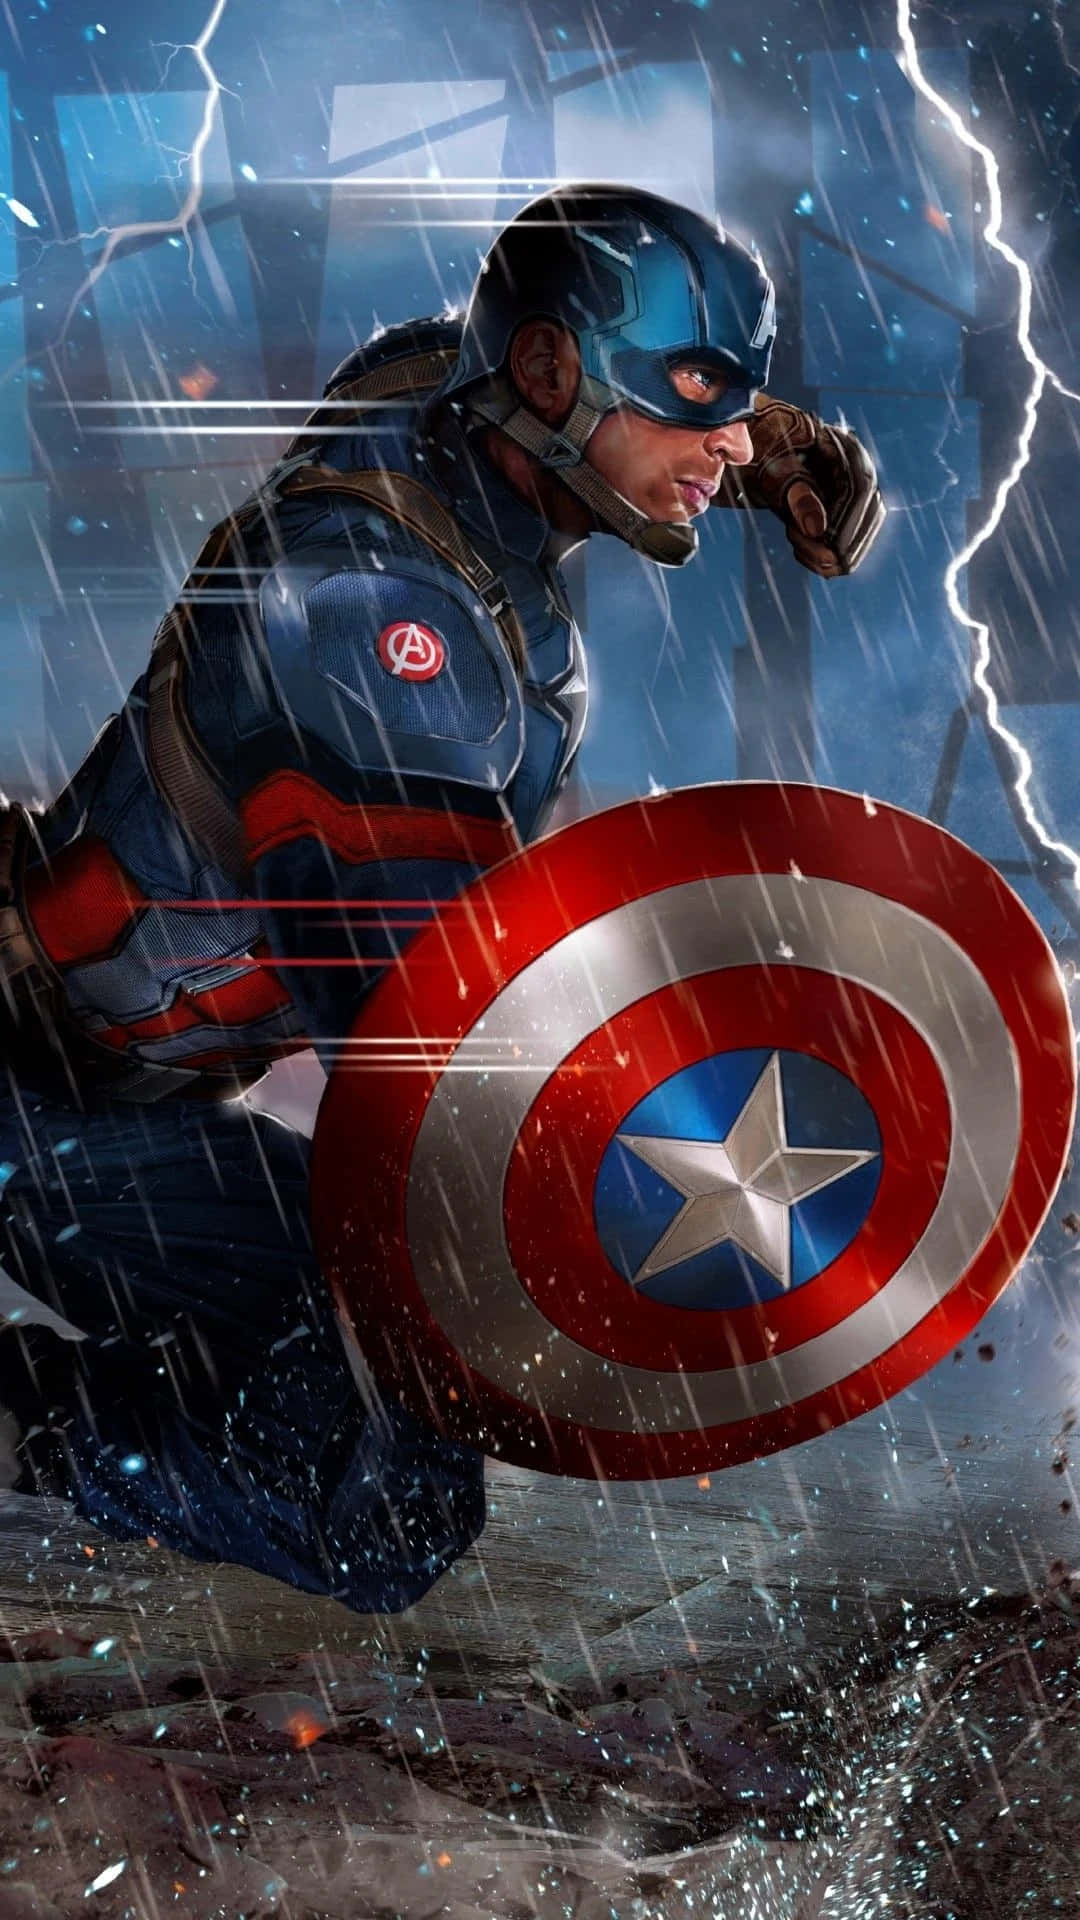 Protegiendoel Mundo Con Un Capitán América Inspirado En Android